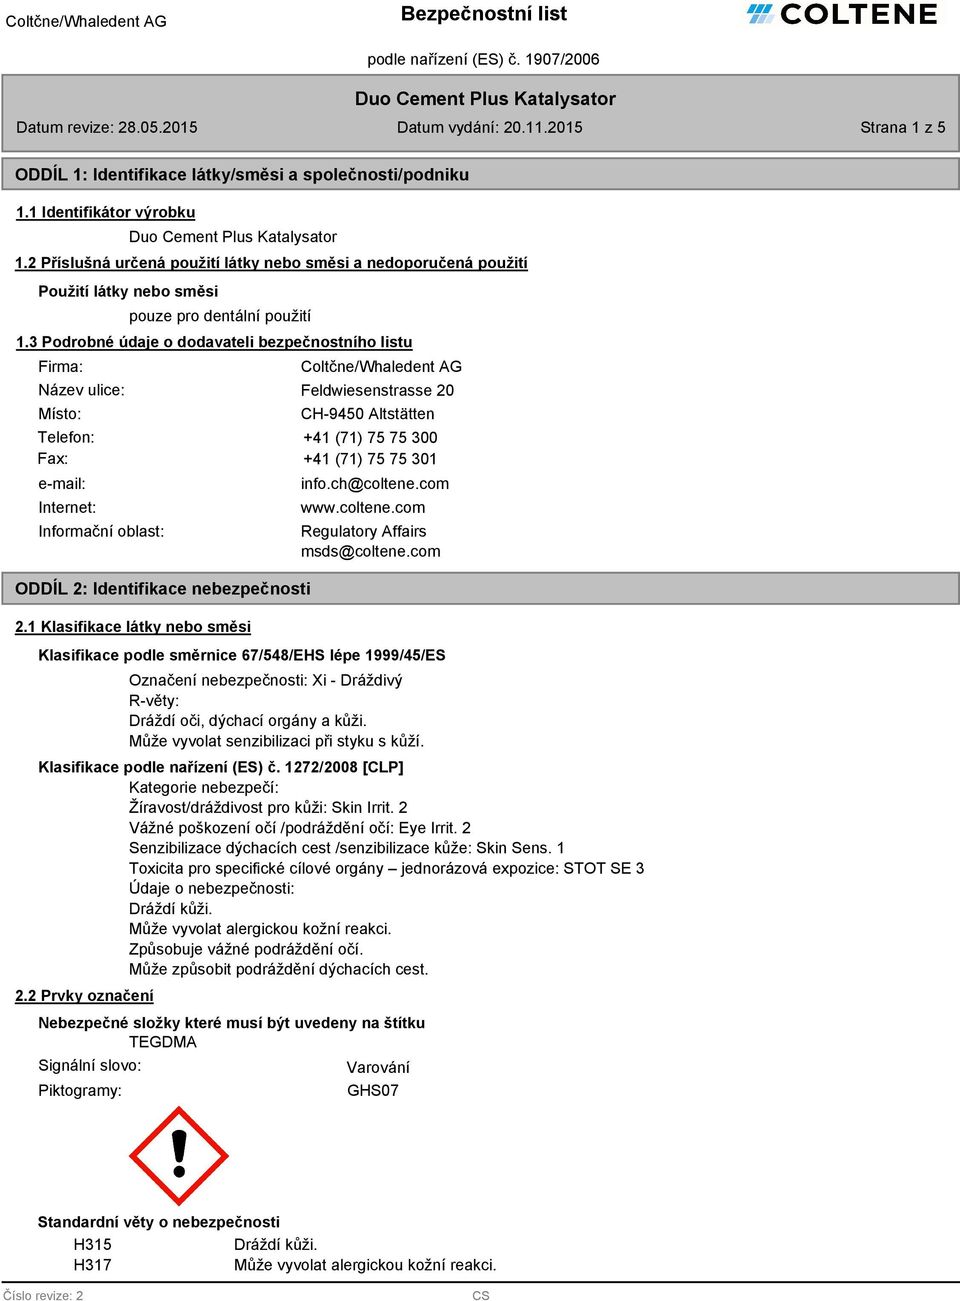 3 Podrobné údaje o dodavateli bezpečnostního listu Firma: ulice: Místo: Coltčne/Whaledent AG Feldwiesenstrasse 20 CH-9450 Altstätten Telefon: +41 (71) 75 75 300 Fax: +41 (71) 75 75 301 e-mail: